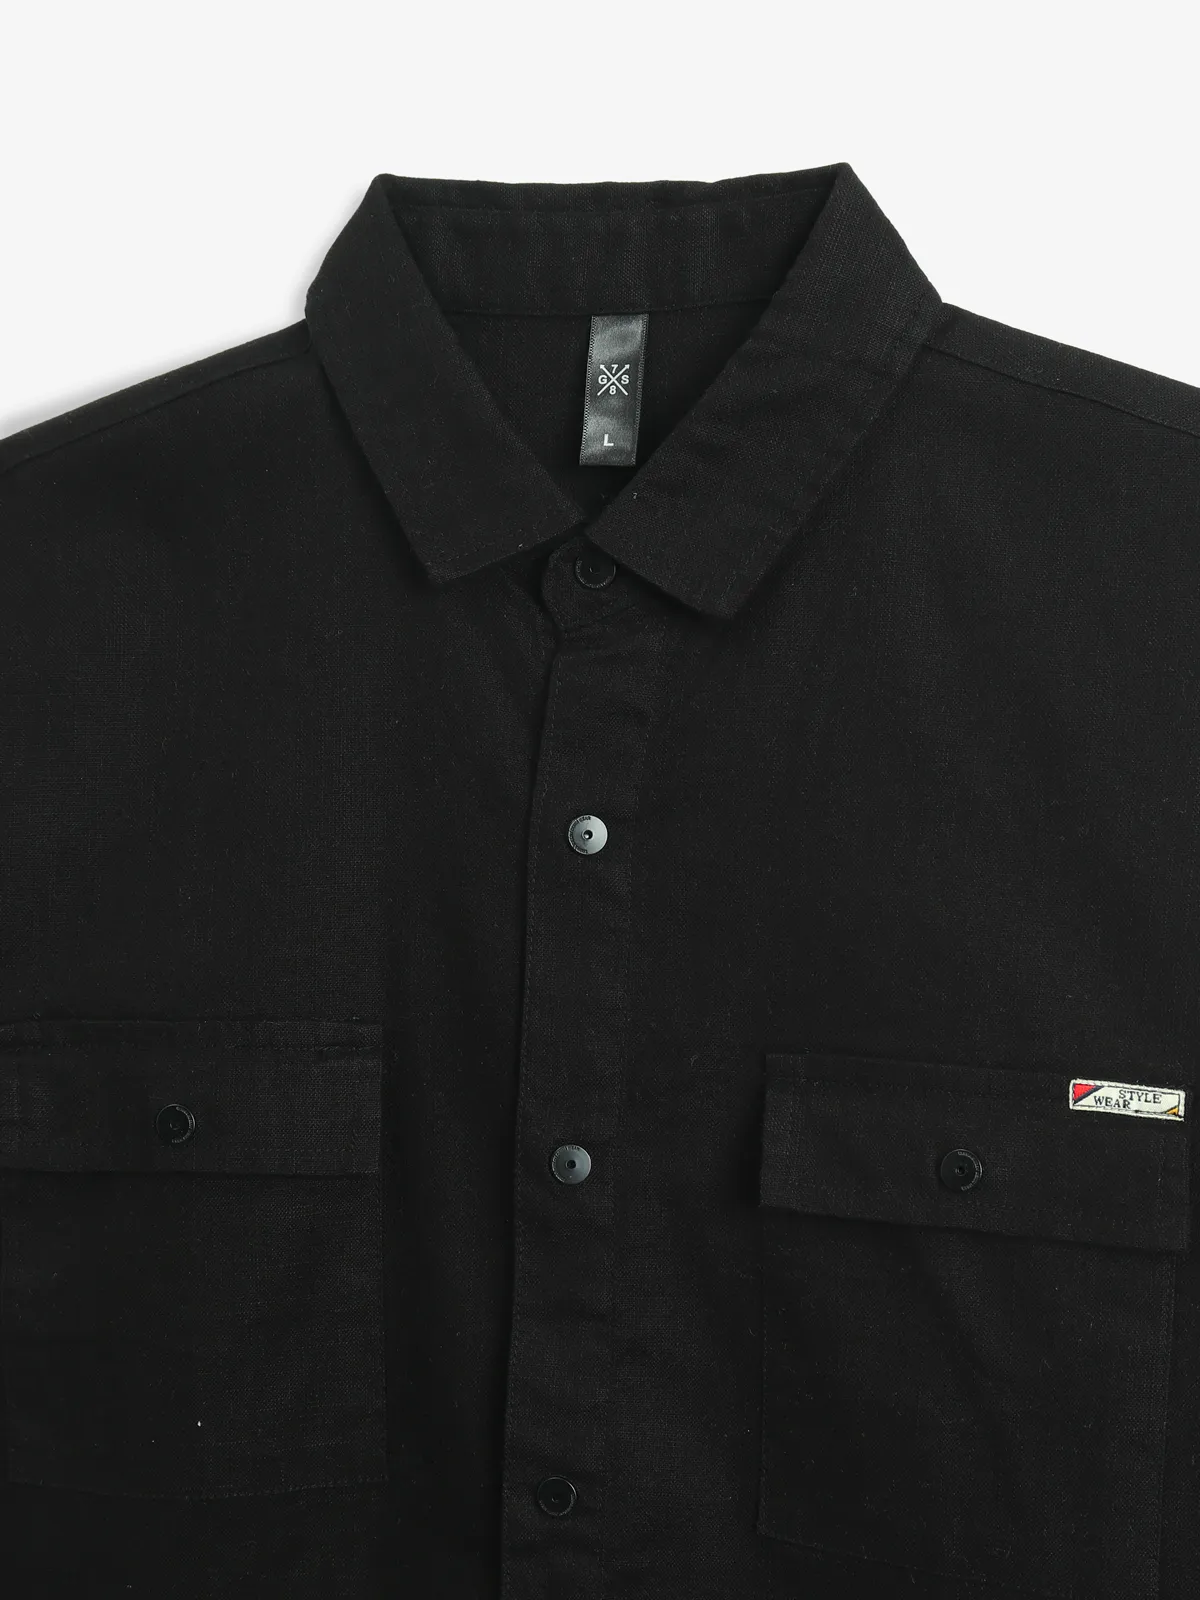 GS78 plian black cotton shirt